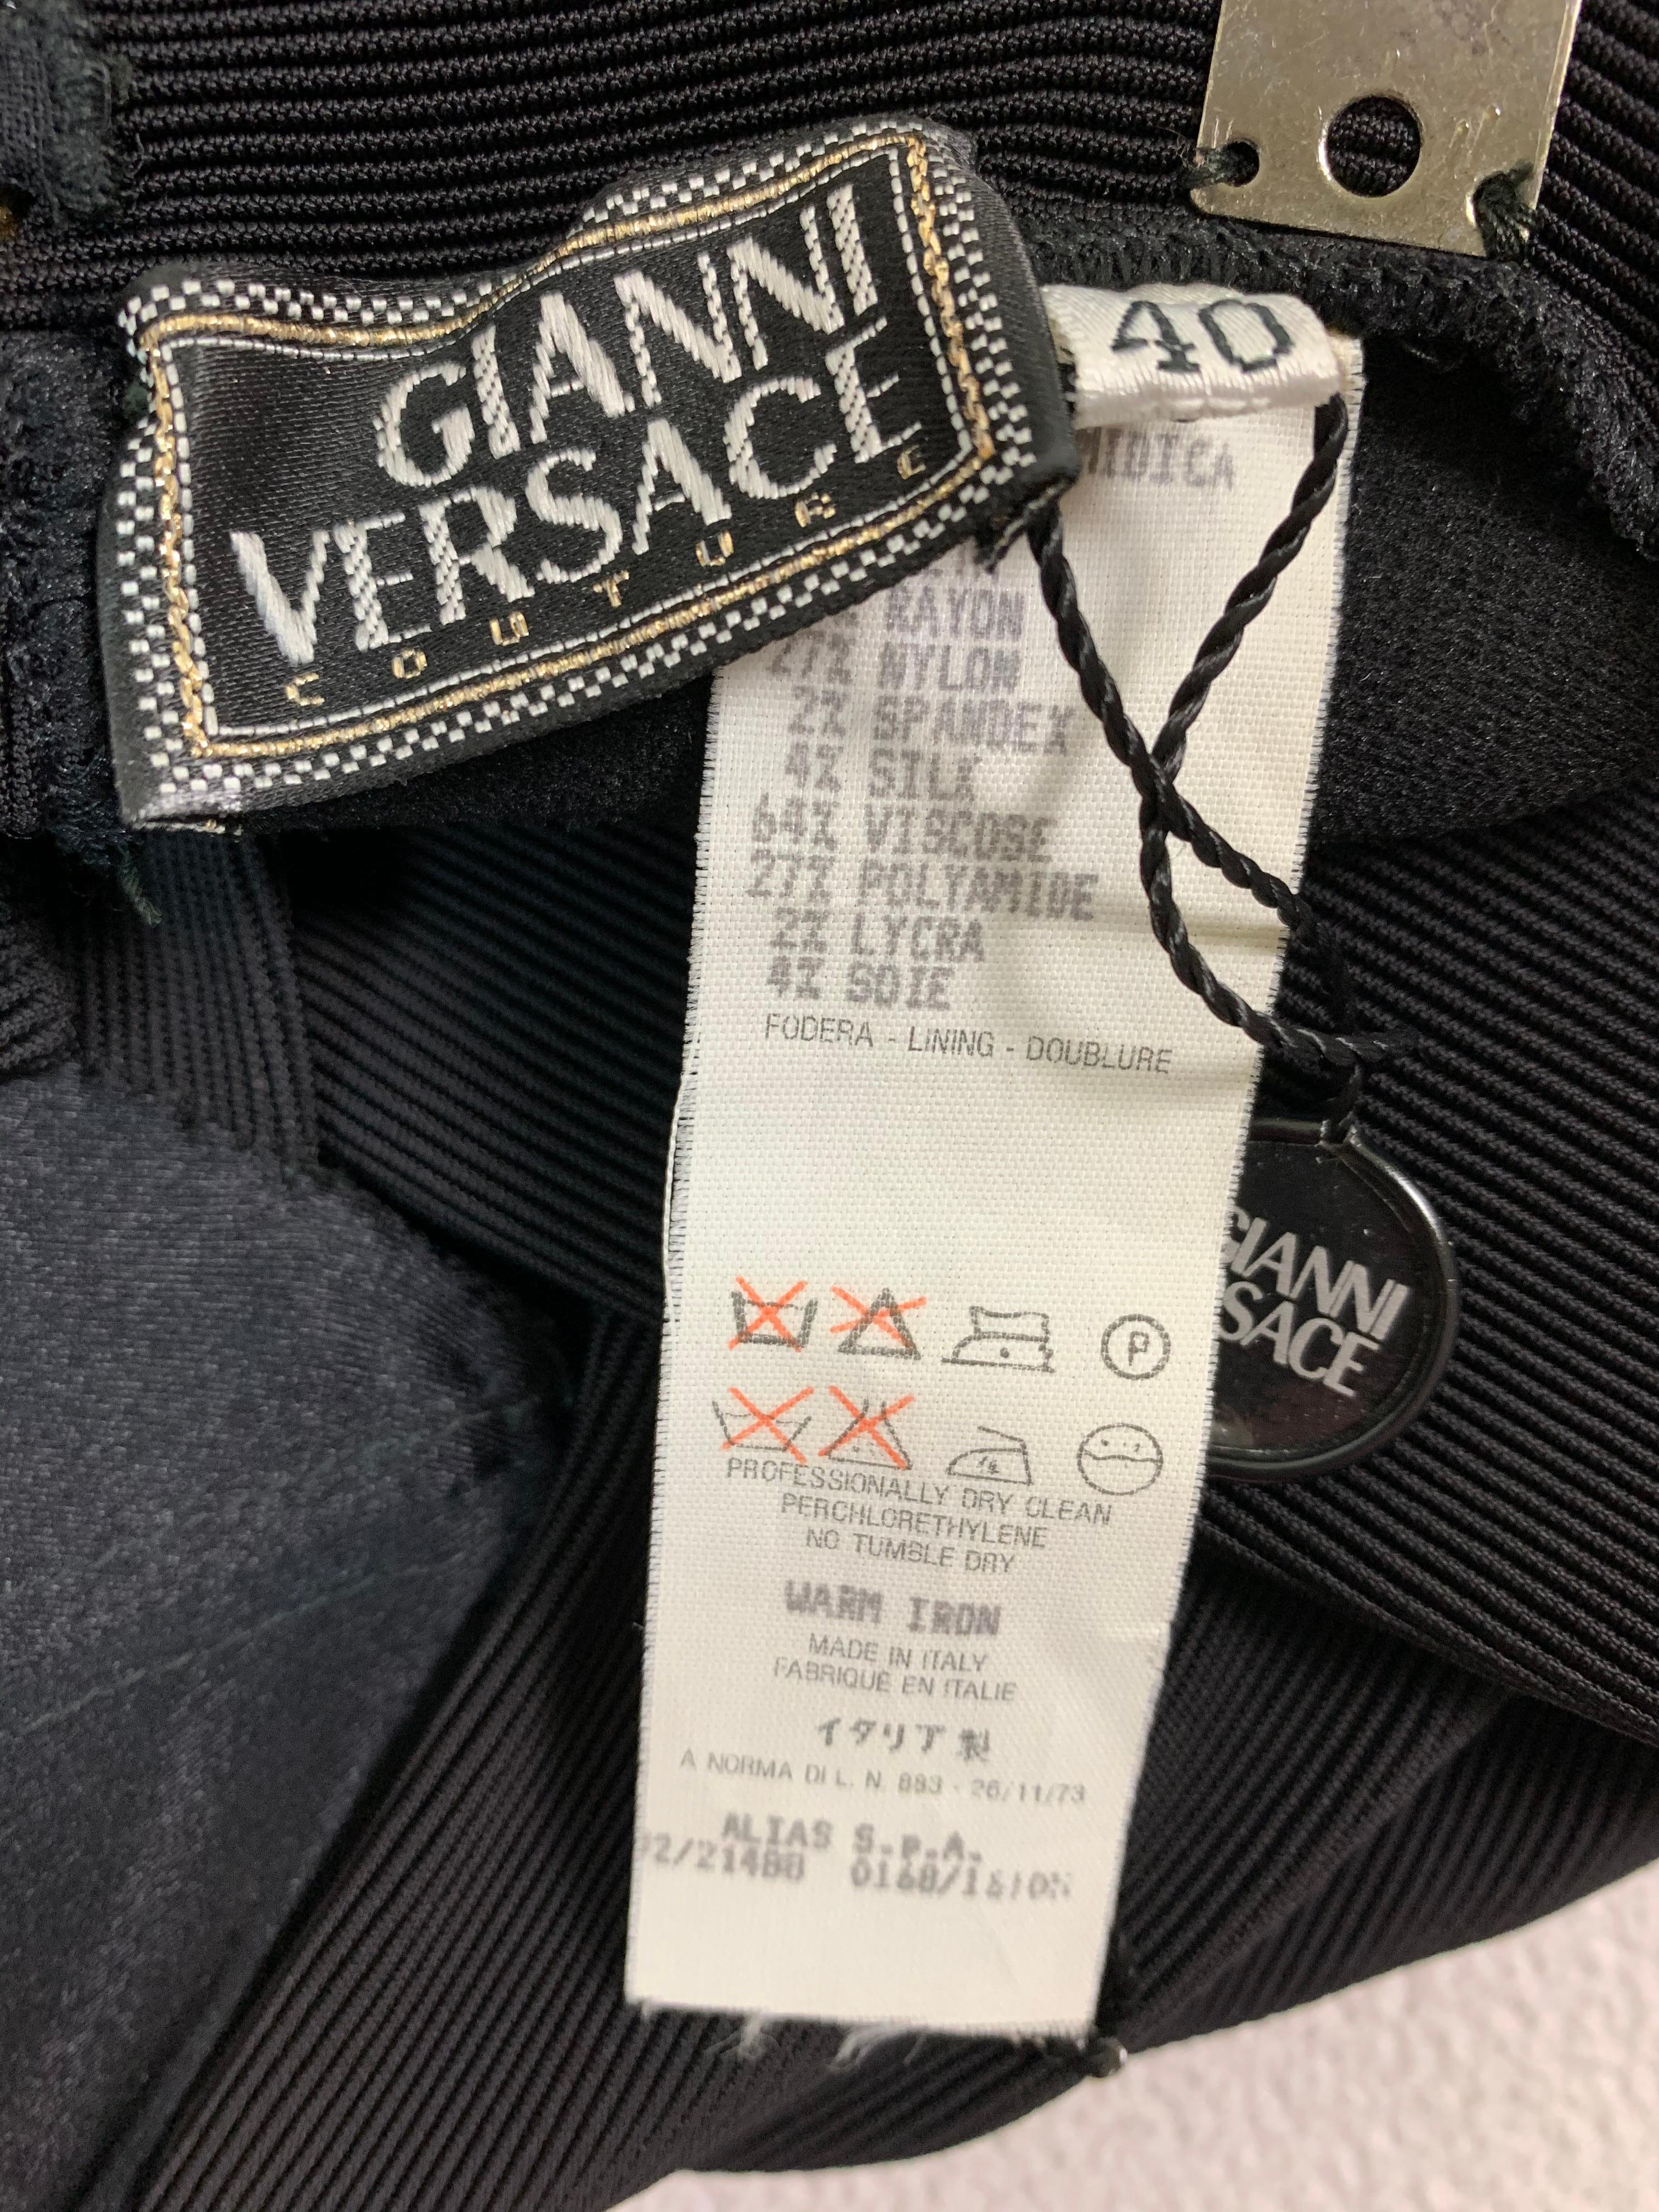 S/S 1992 Gianni Versace Black Plunging Corset Lace Up Jumpsuit 1